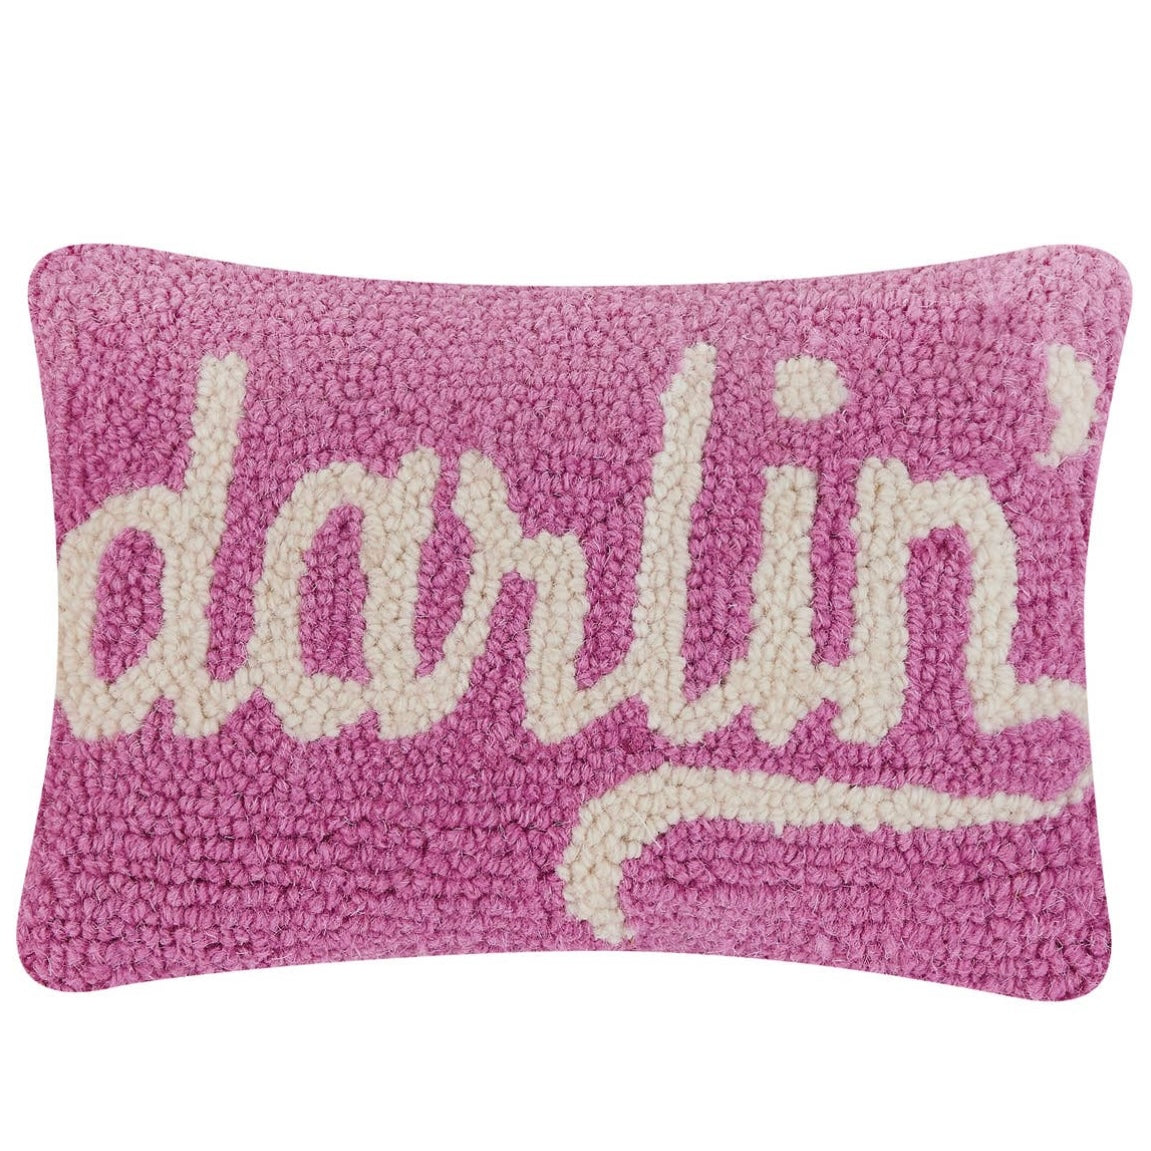 Darlin’ Throw Pillow